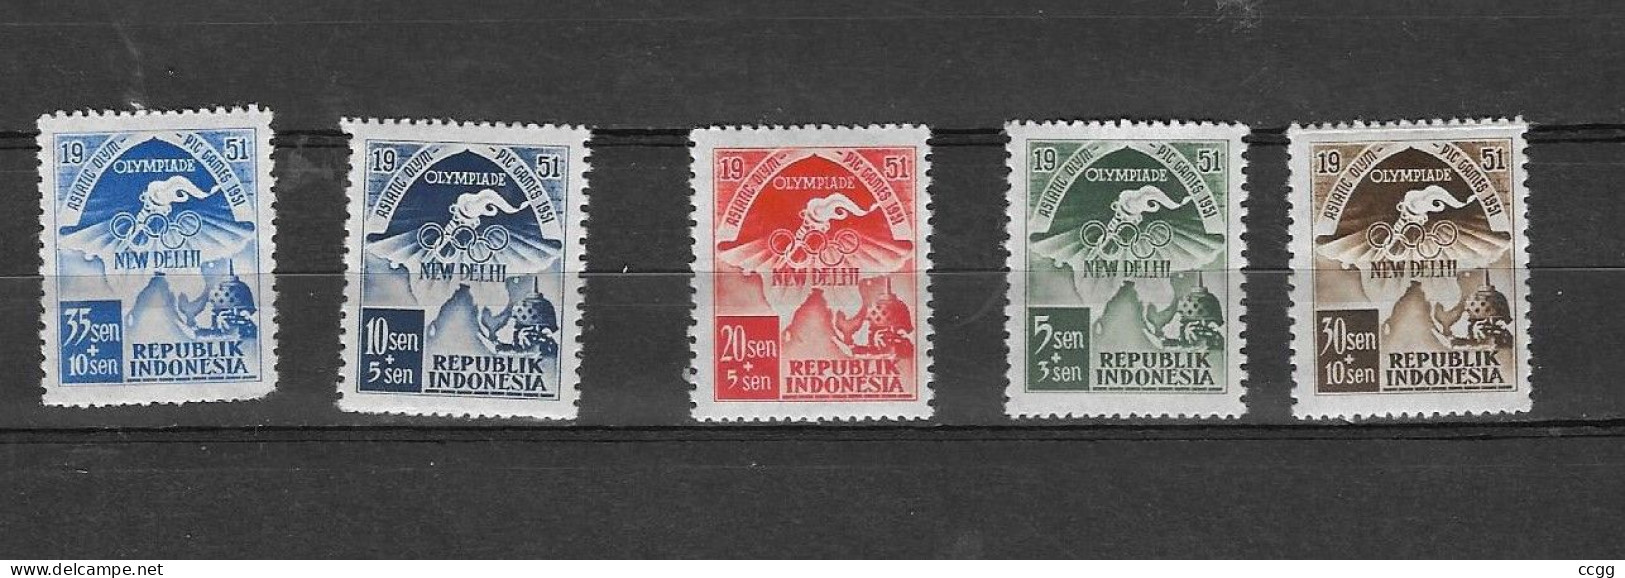 Olympische Spelen  1952 , Indonesie  - Zegels  Postfris - Summer 1952: Helsinki